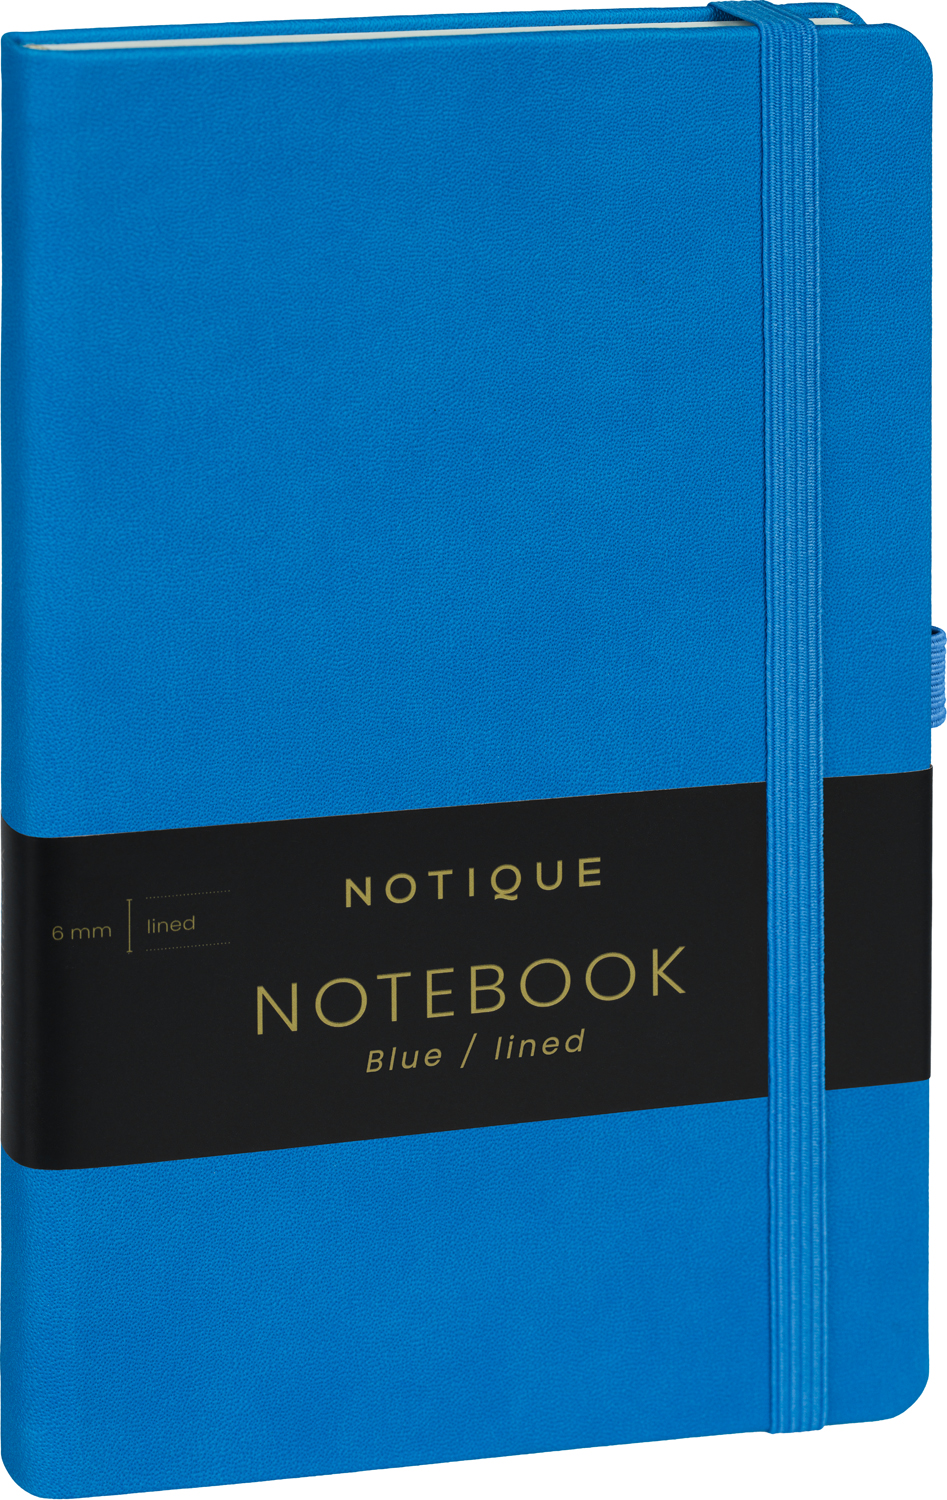 Linkovaný zápisník Modrý, 13x21 cm